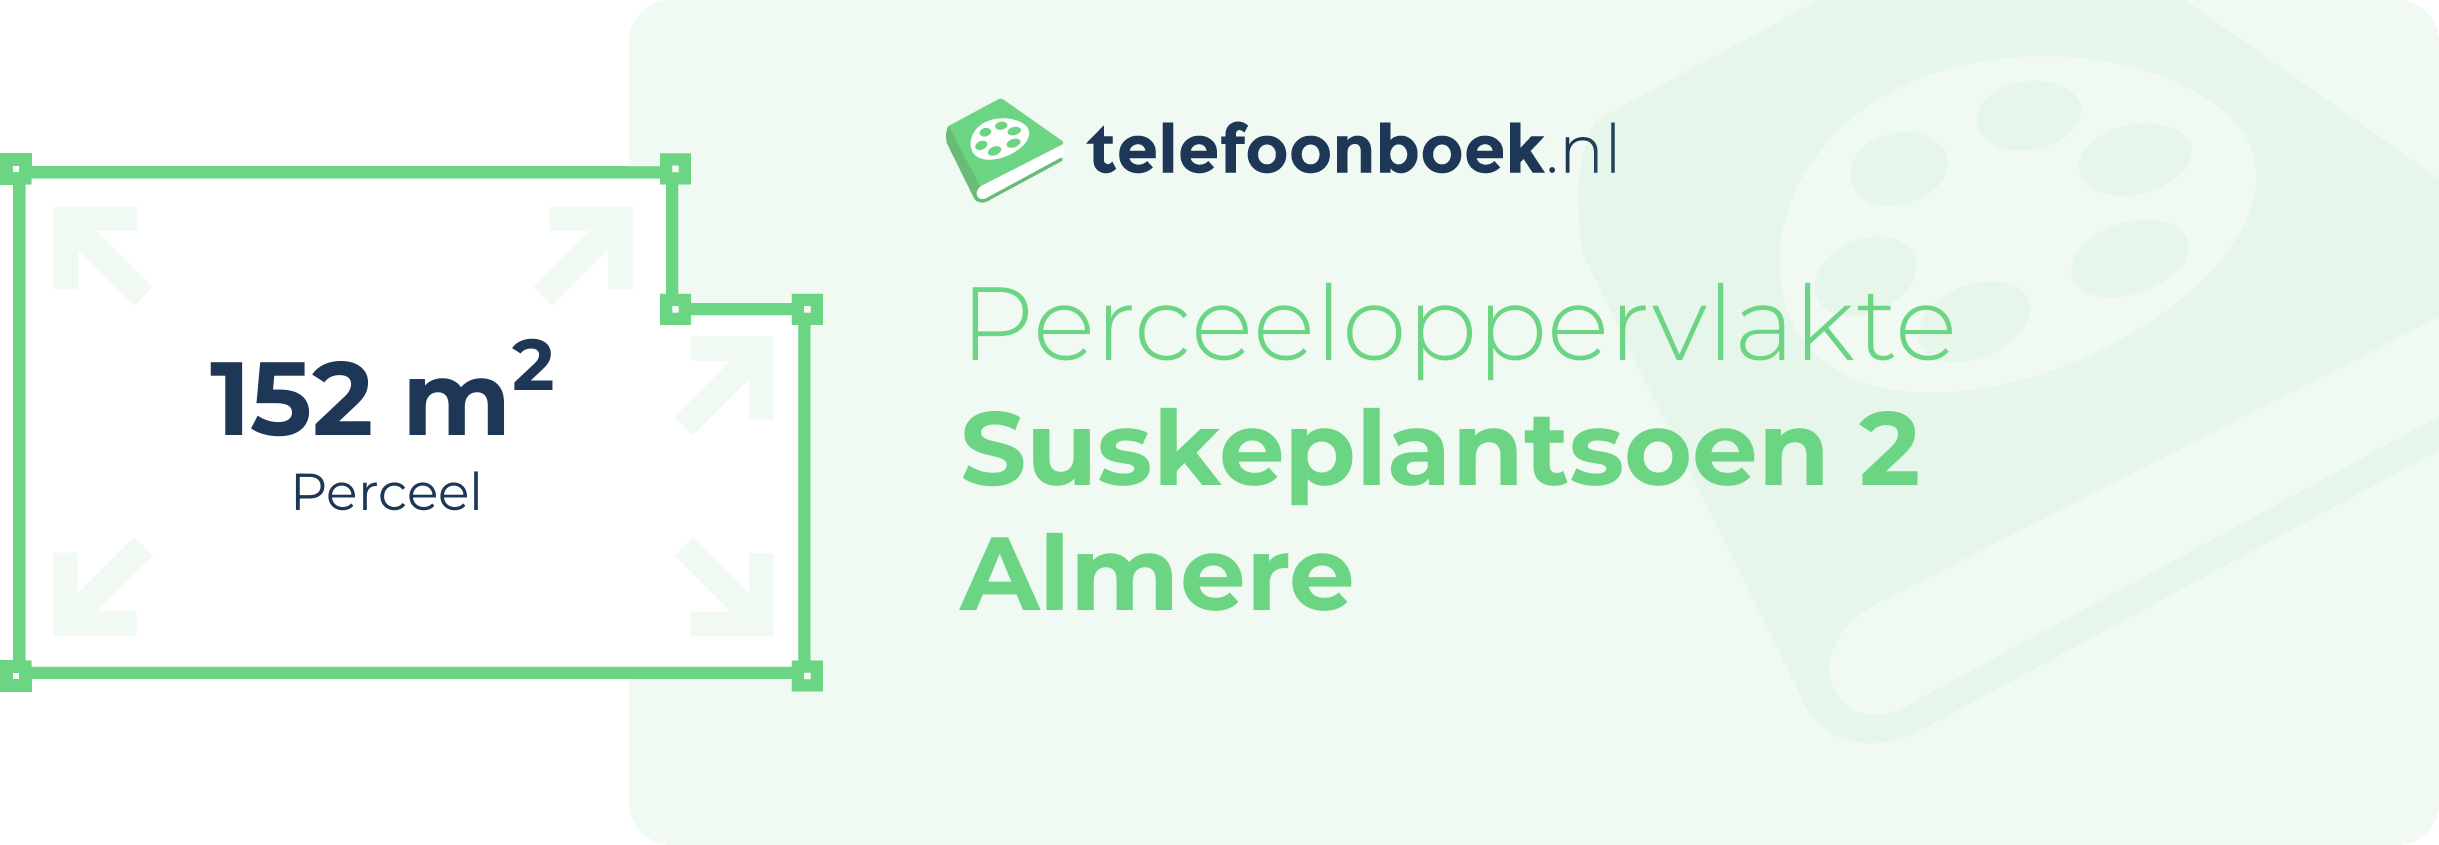 Perceeloppervlakte Suskeplantsoen 2 Almere